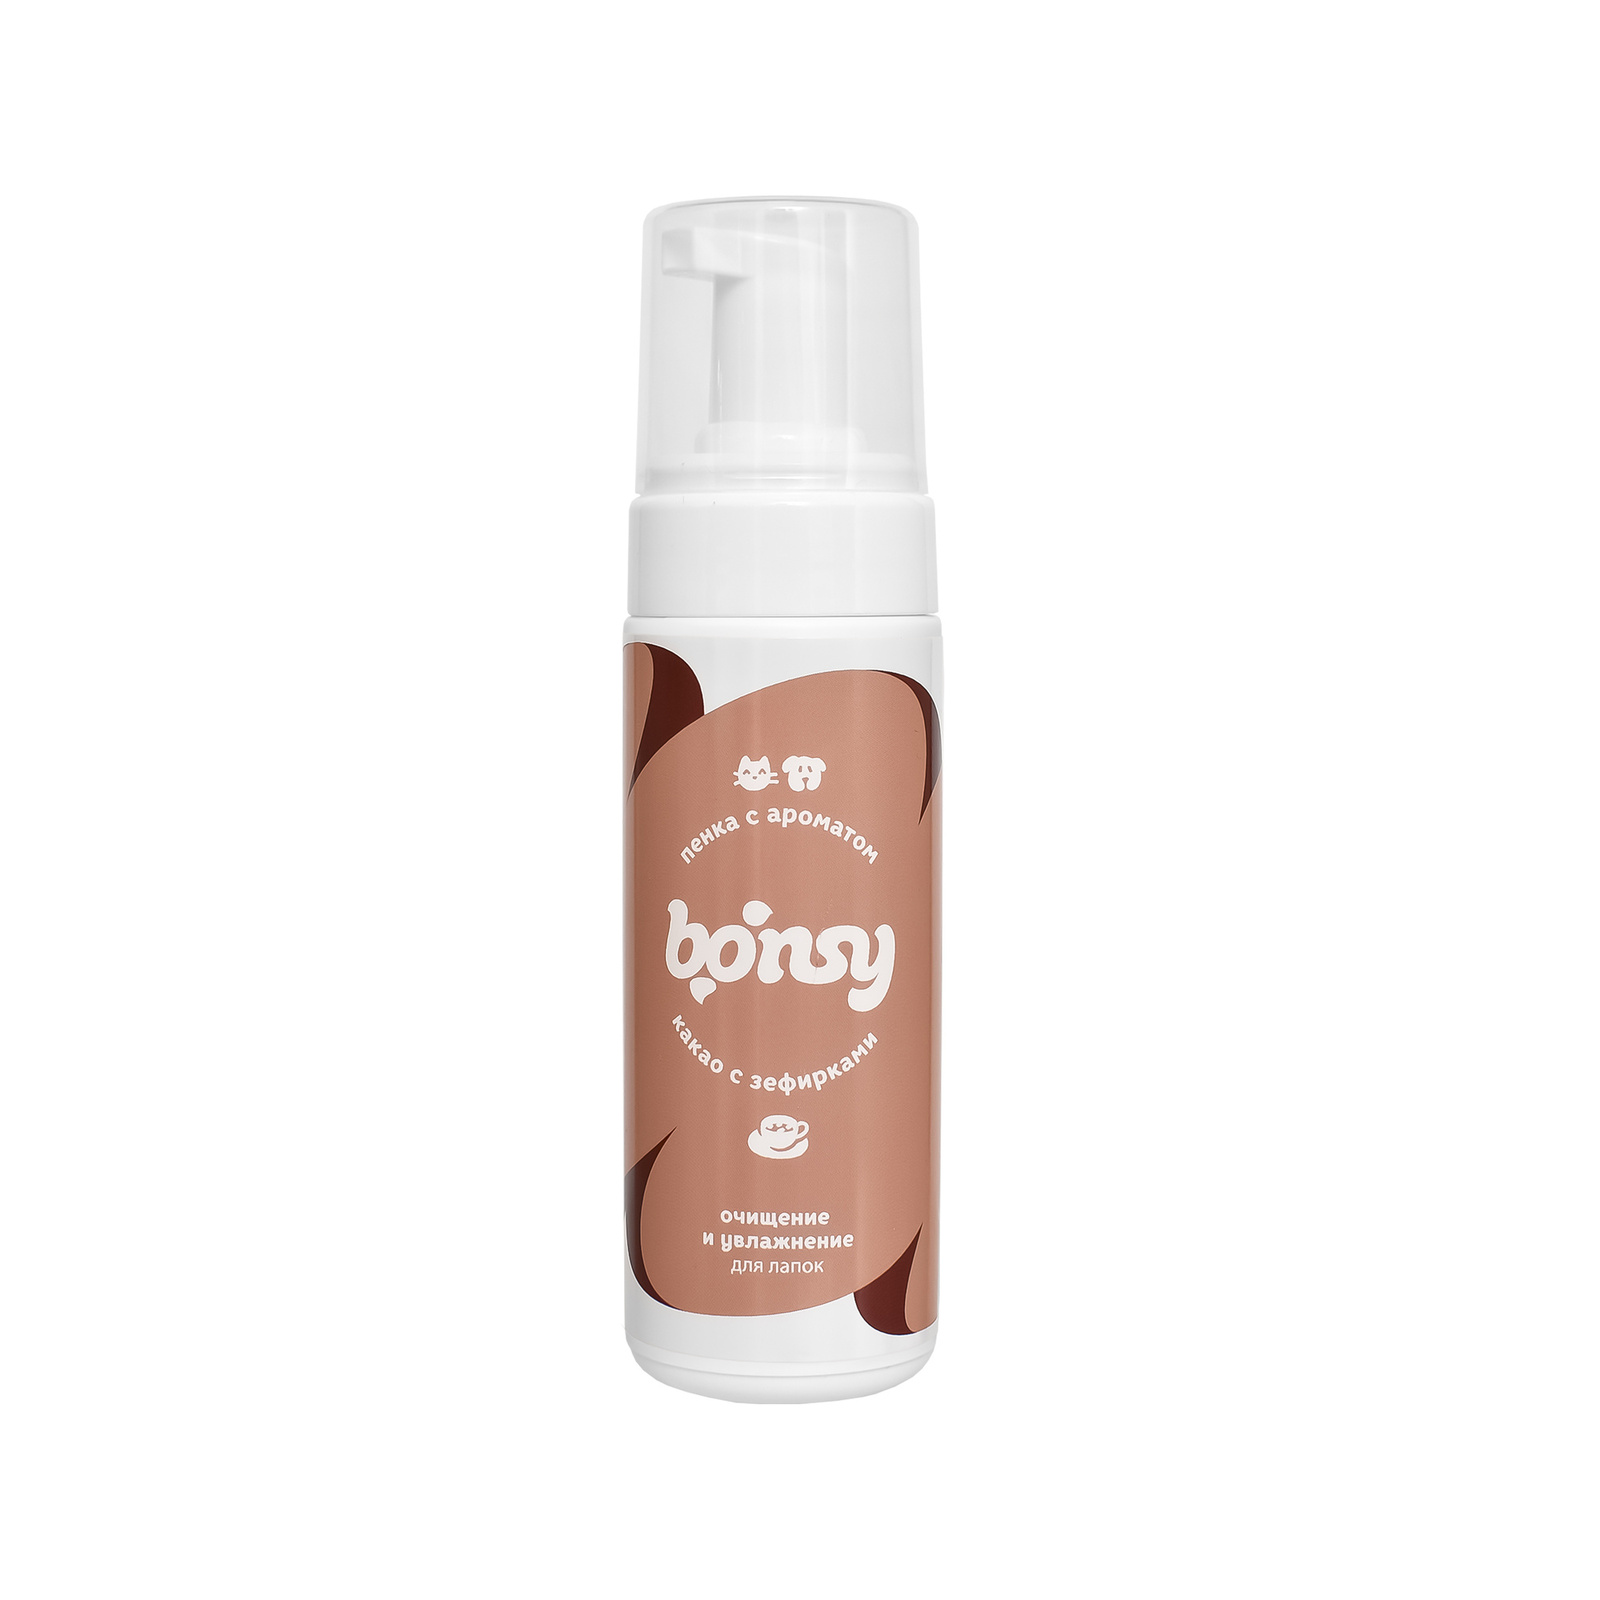 Bonsy пенка для лап: очищение и увлажнение с ароматом 